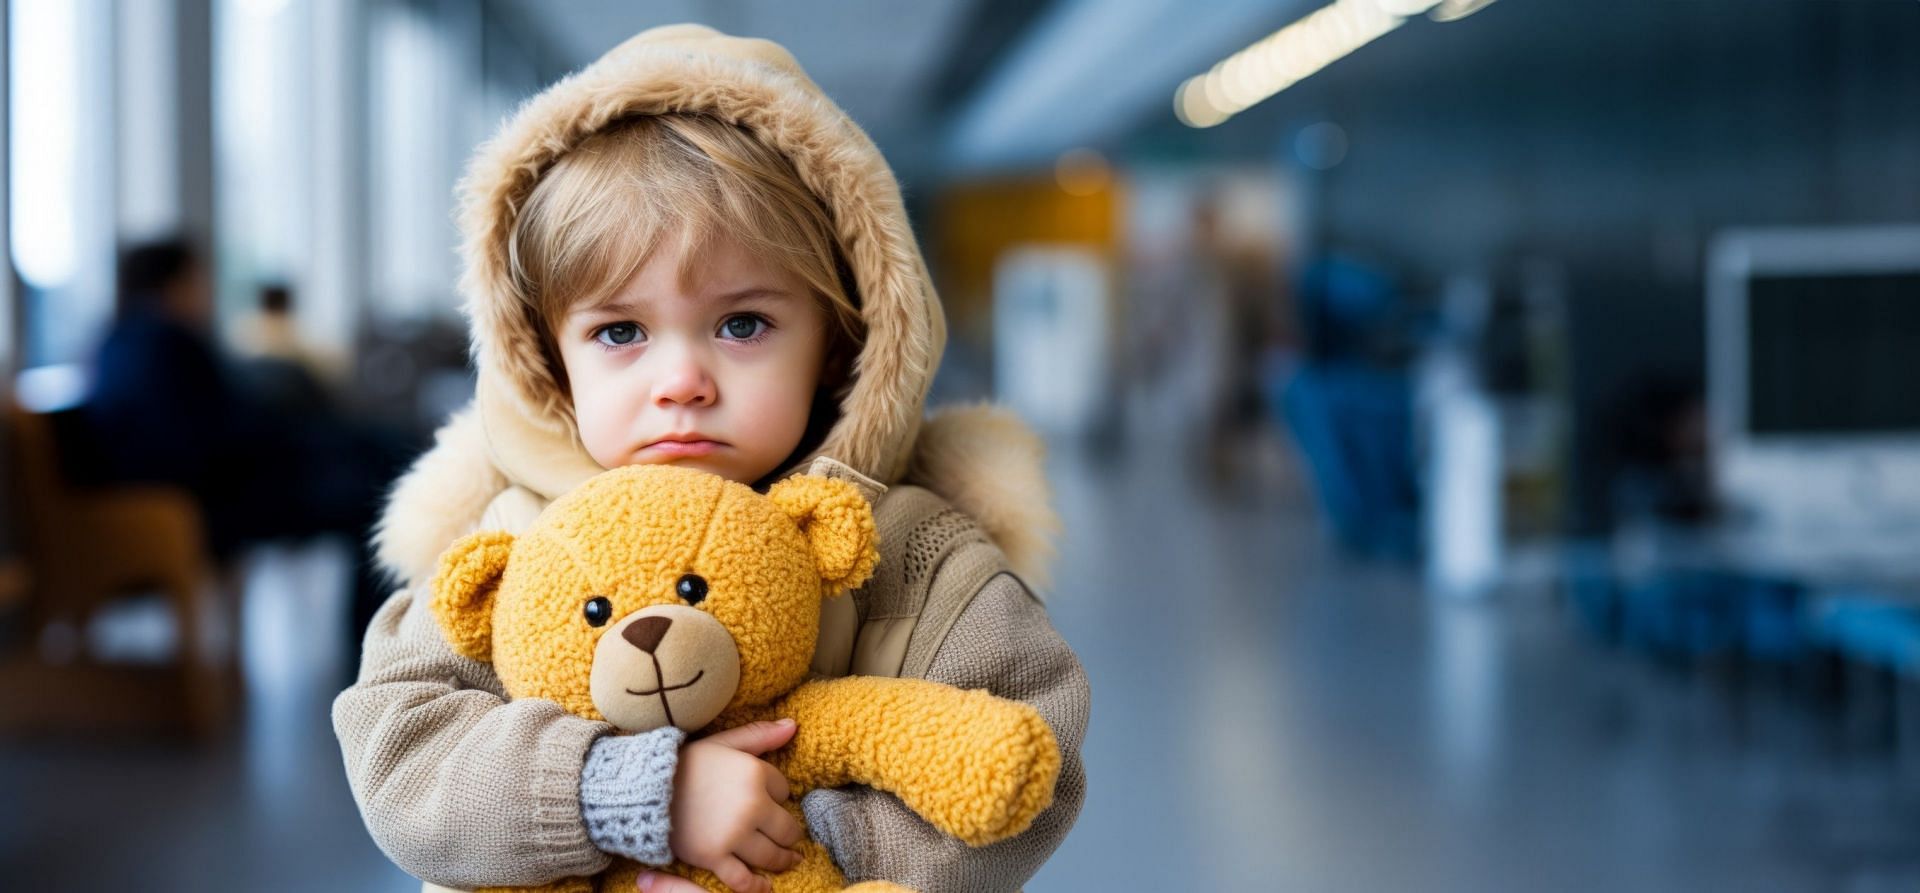 Children are likely to feel vulnerable just like anyone else. (Image via Vecteezy/ Kseniia Chunaeva)